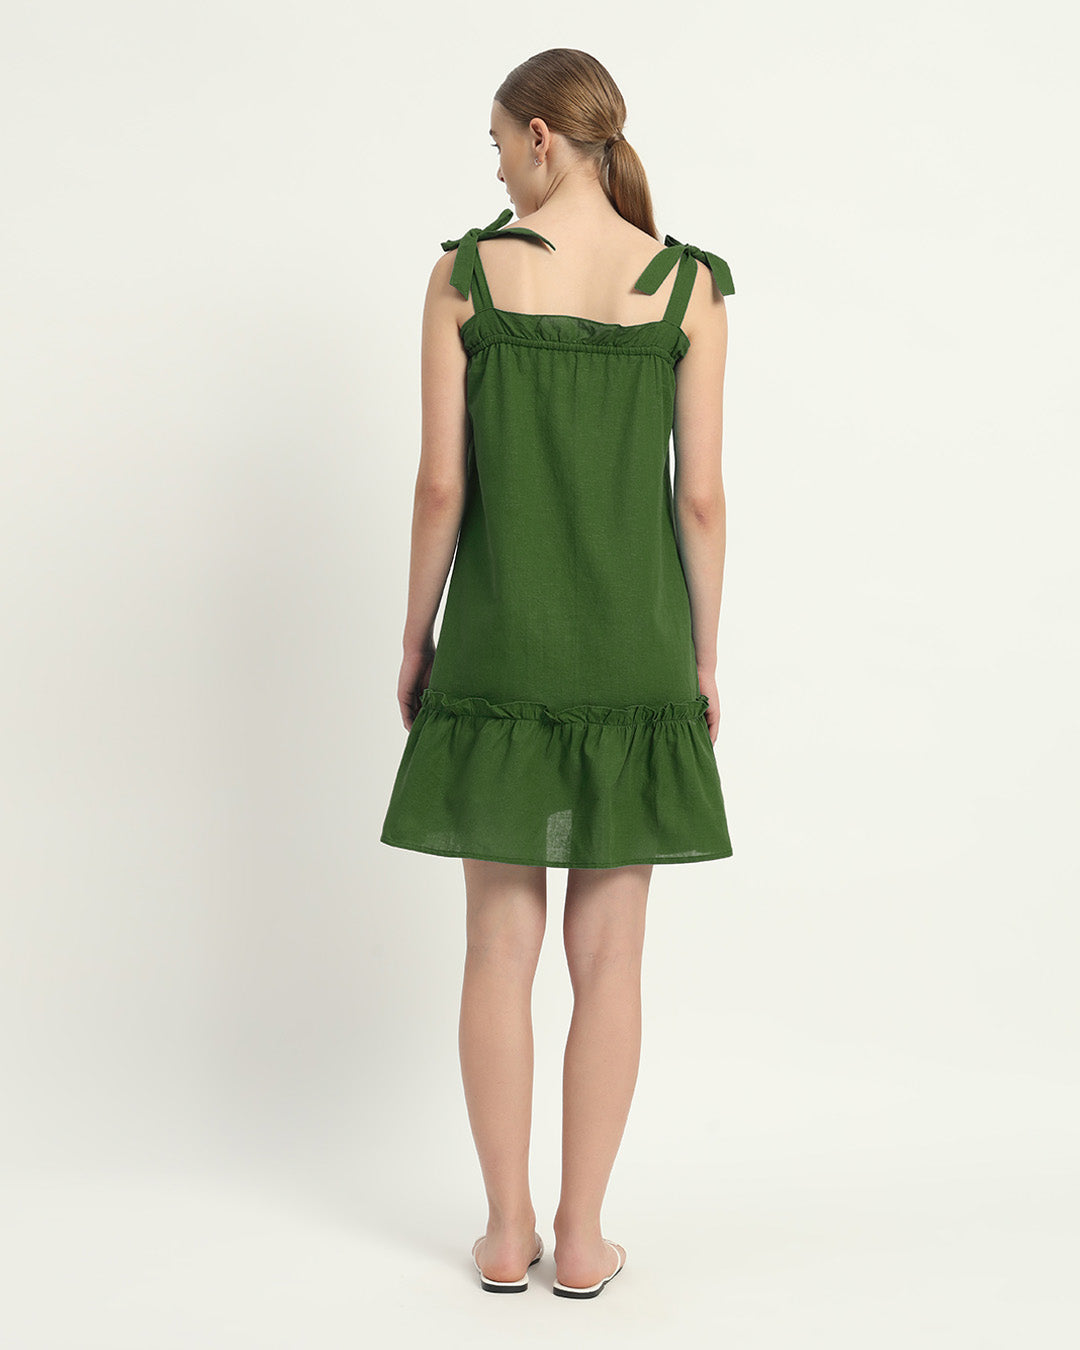 The Emerald Amalfi Cotton Dress